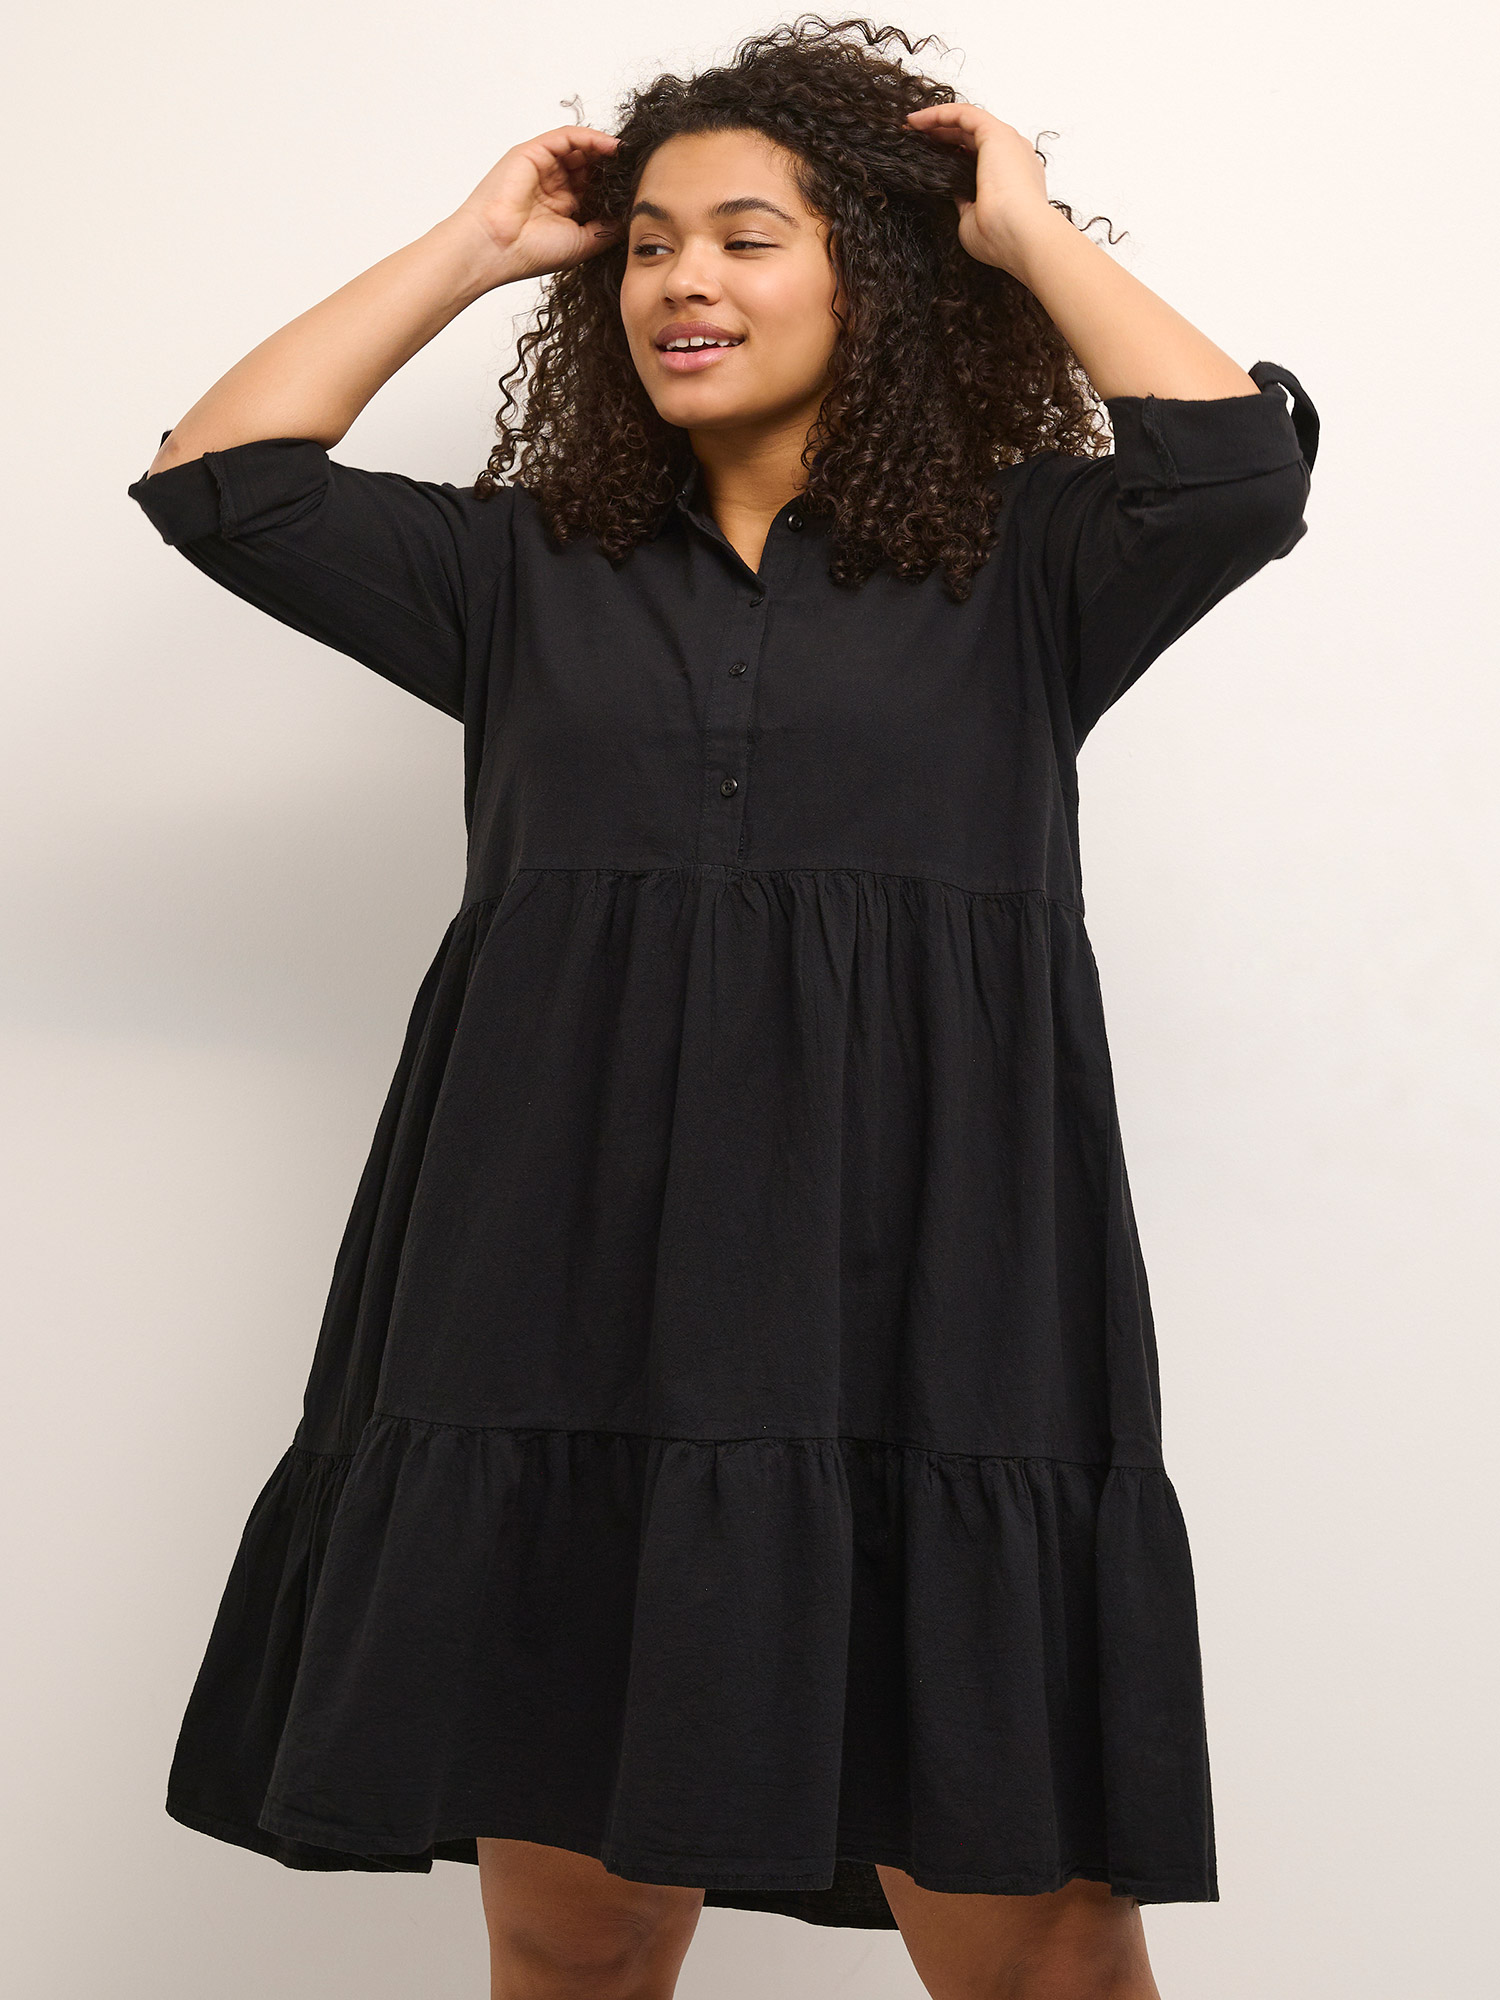 KCnana - Skøn sort kjole i ren bomuld fra Kaffe Curve